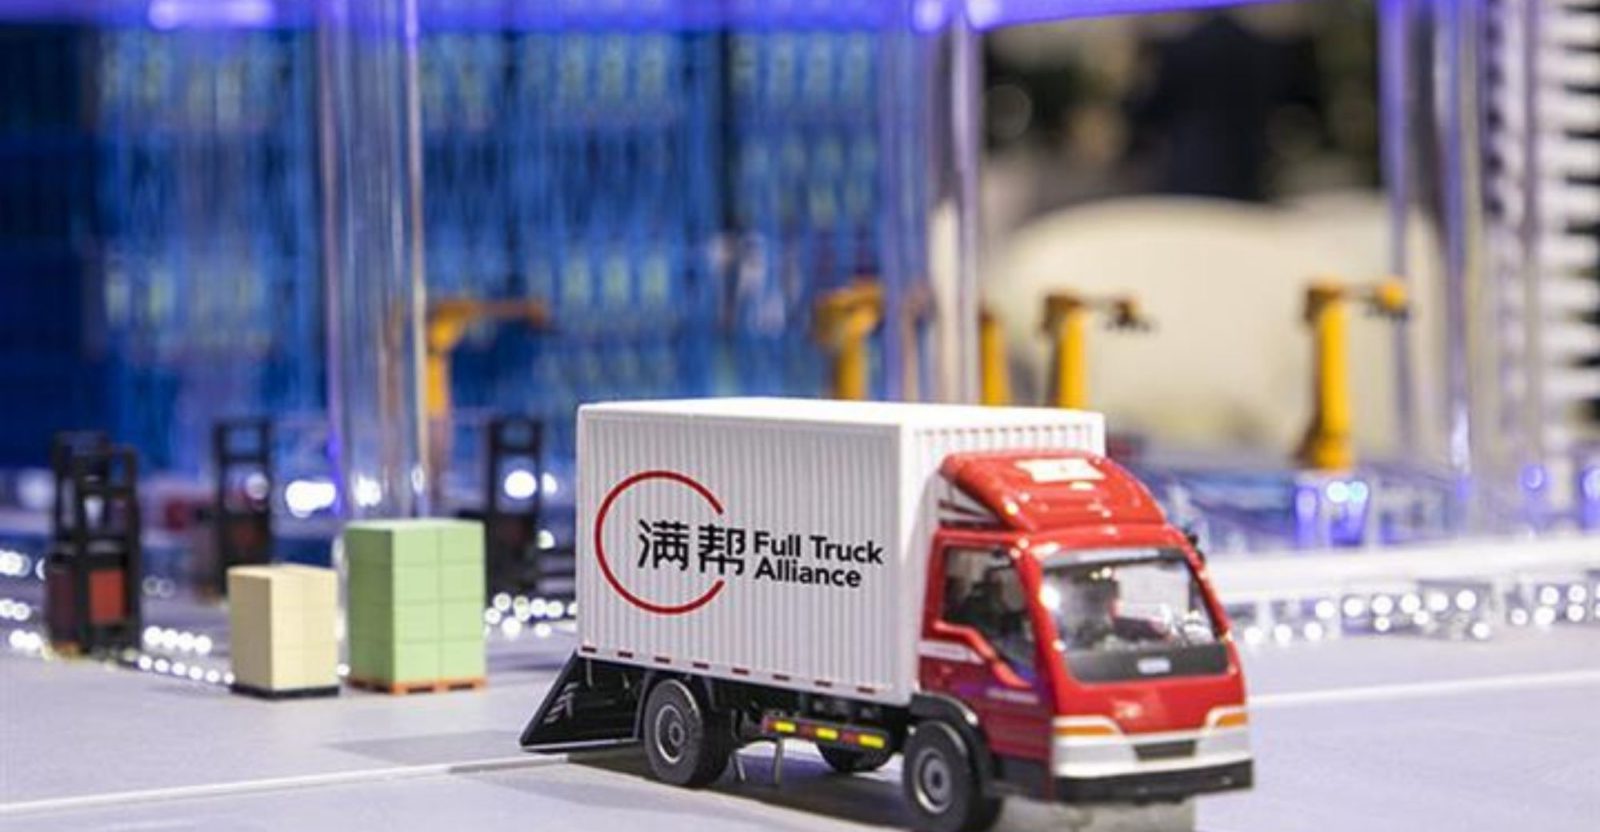 Full Truck Alliance – “Uber dành cho xe tải” của Trung Quốc cũng trong tầm ngắm.